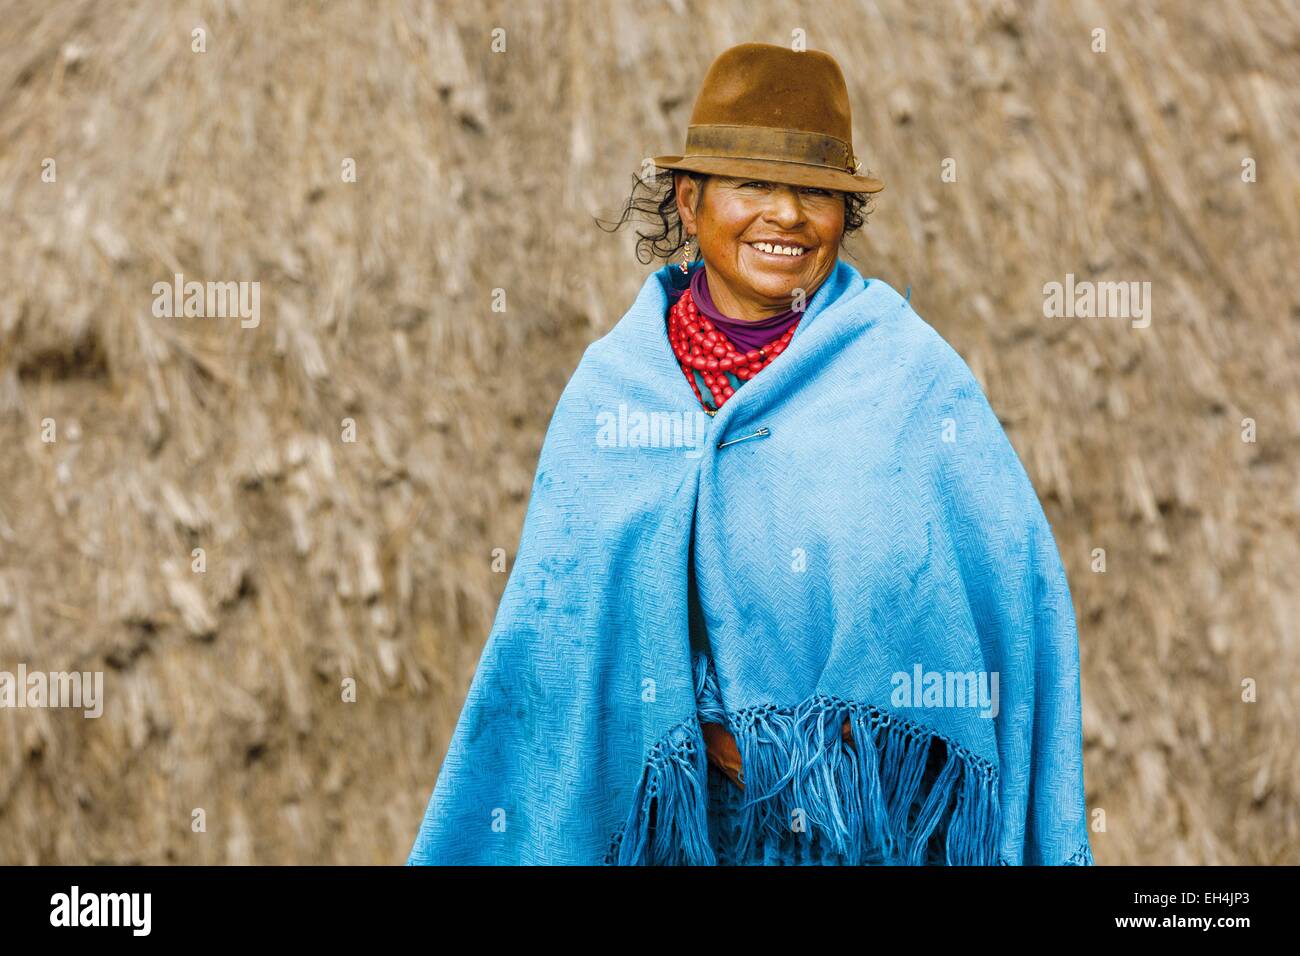 Ecuador, Cotopaxi, Tigua, retrato de un campesino Ecuatoriano Foto de stock